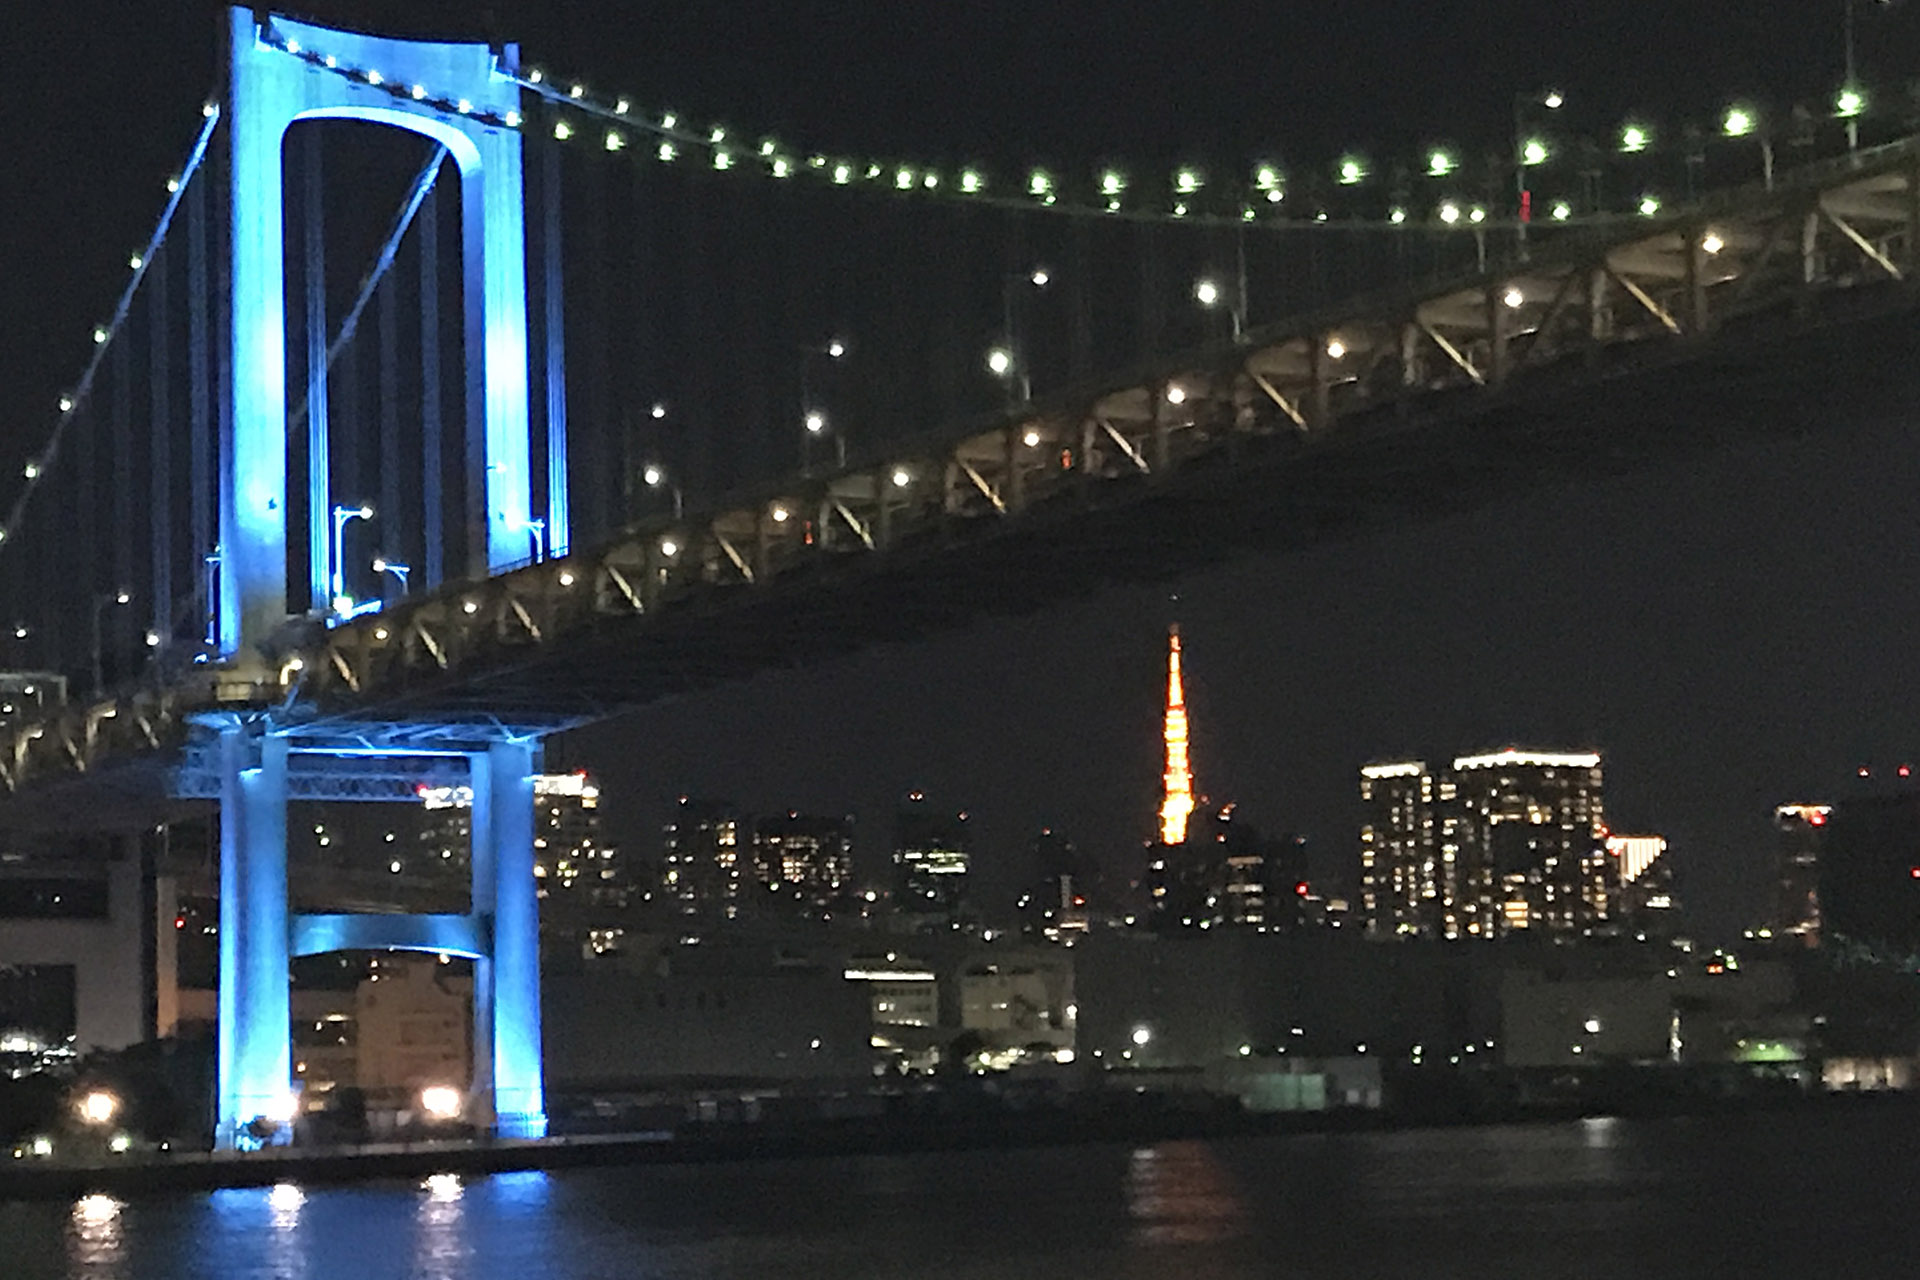 東海汽船 横浜 東京の夜景を楽しむロマンチックなクリスマスクルーズ 大人1000円 11月21日から トラベル Watch